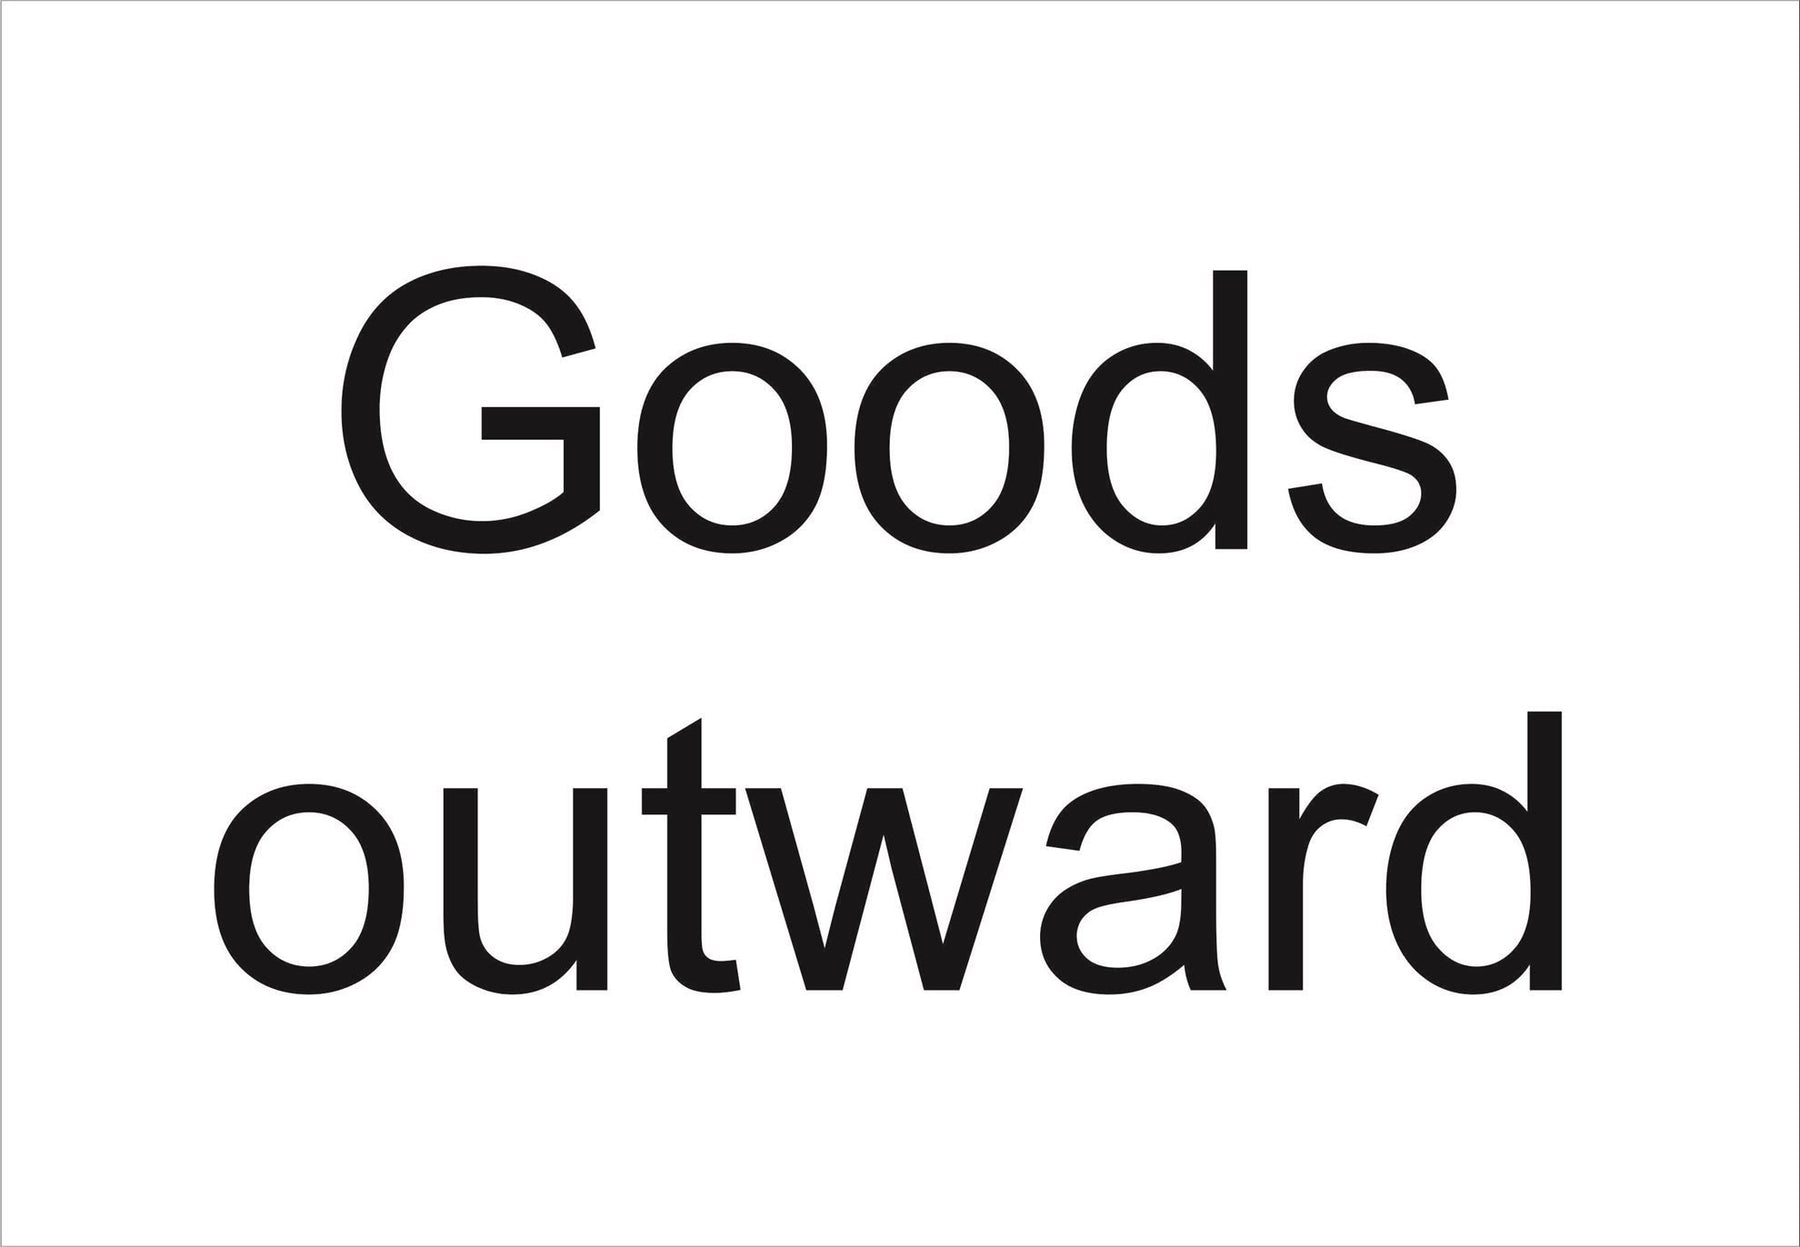 Goods outward